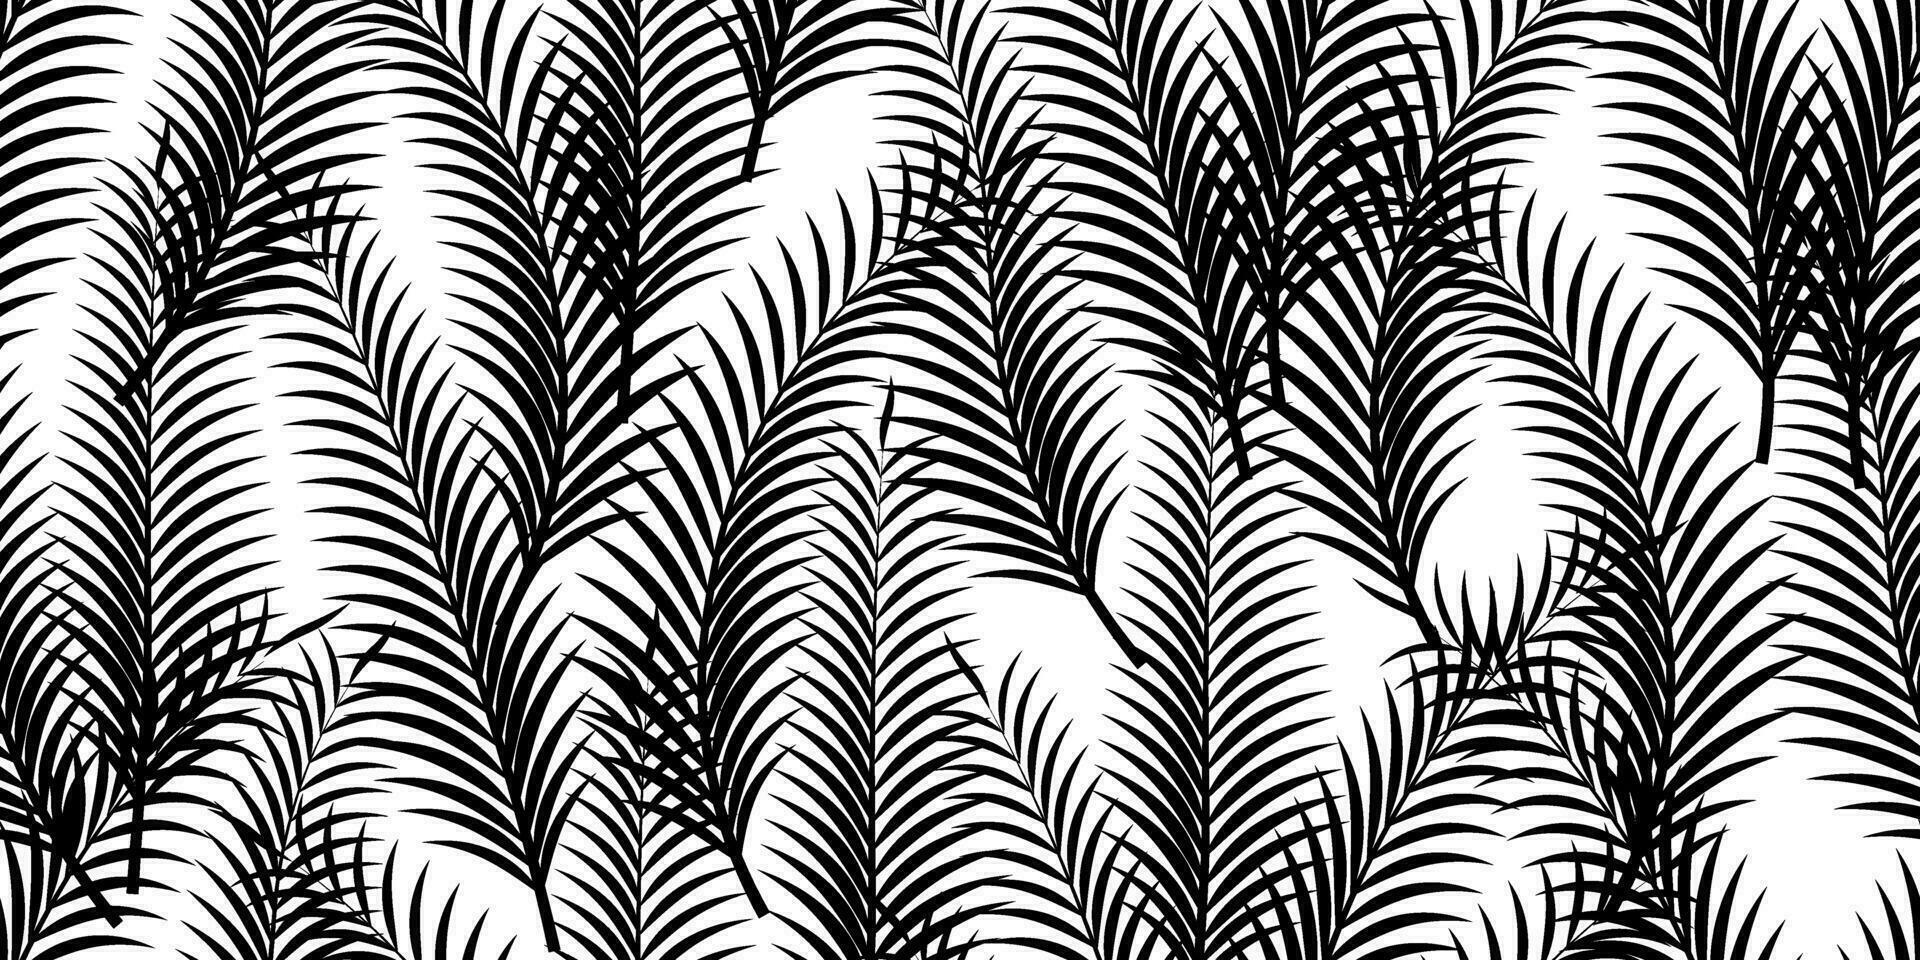 schwarz Weiß Palme Blätter nahtlos Muster vektor